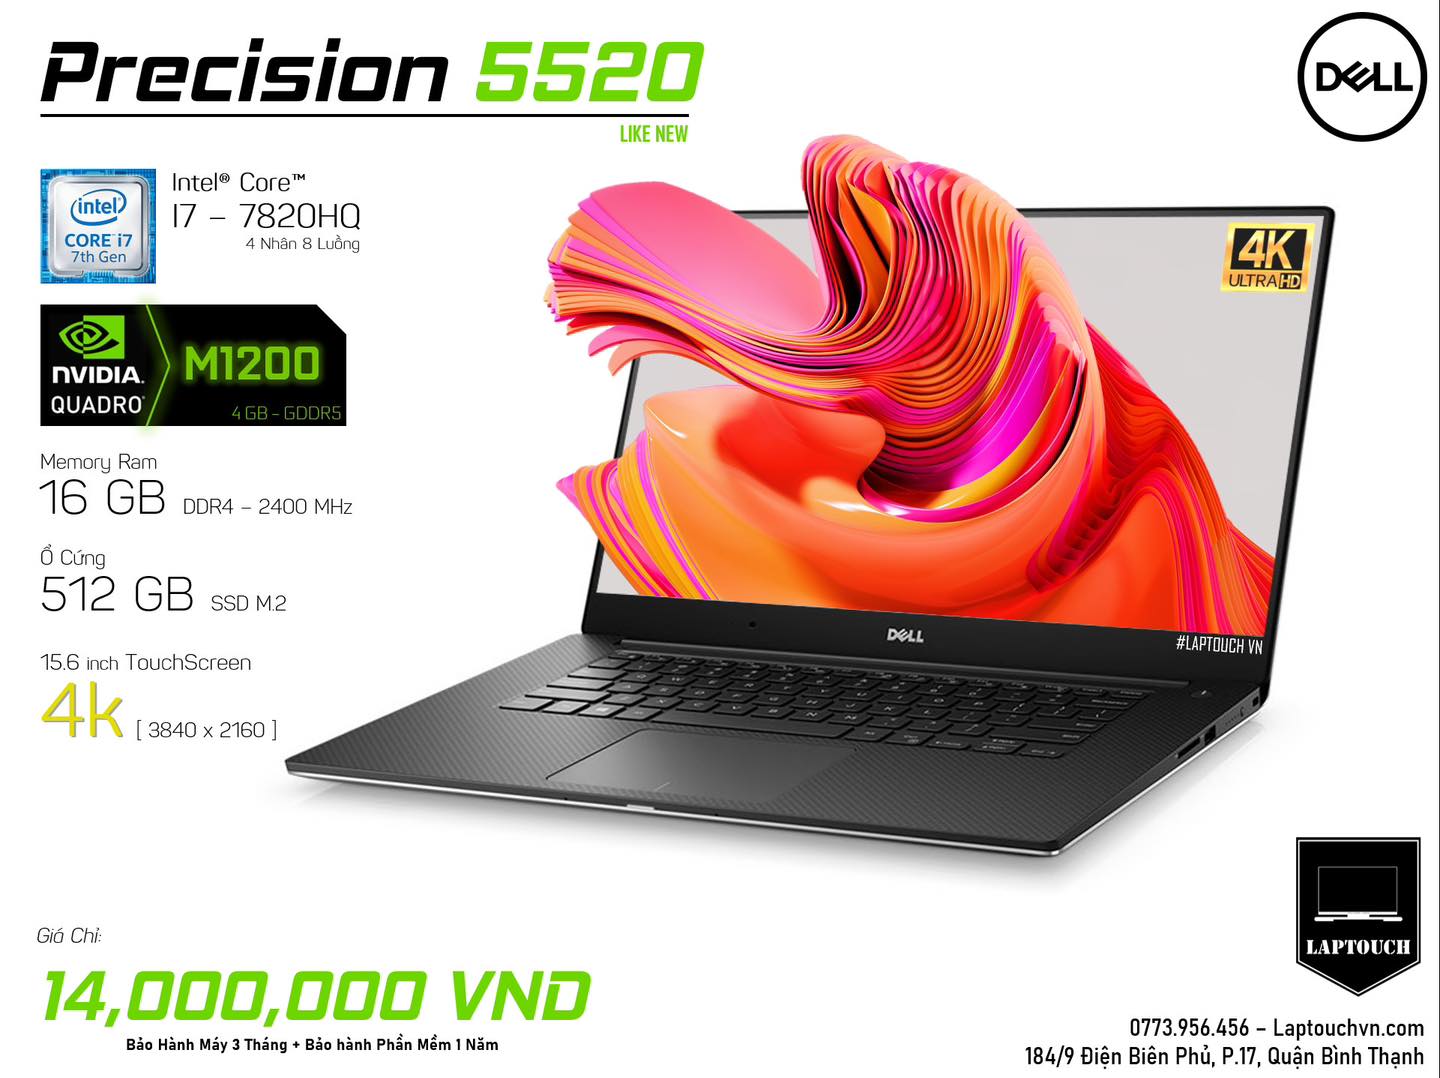 Dell Precision 5520 [ Like New - 4K TouchScreen ]